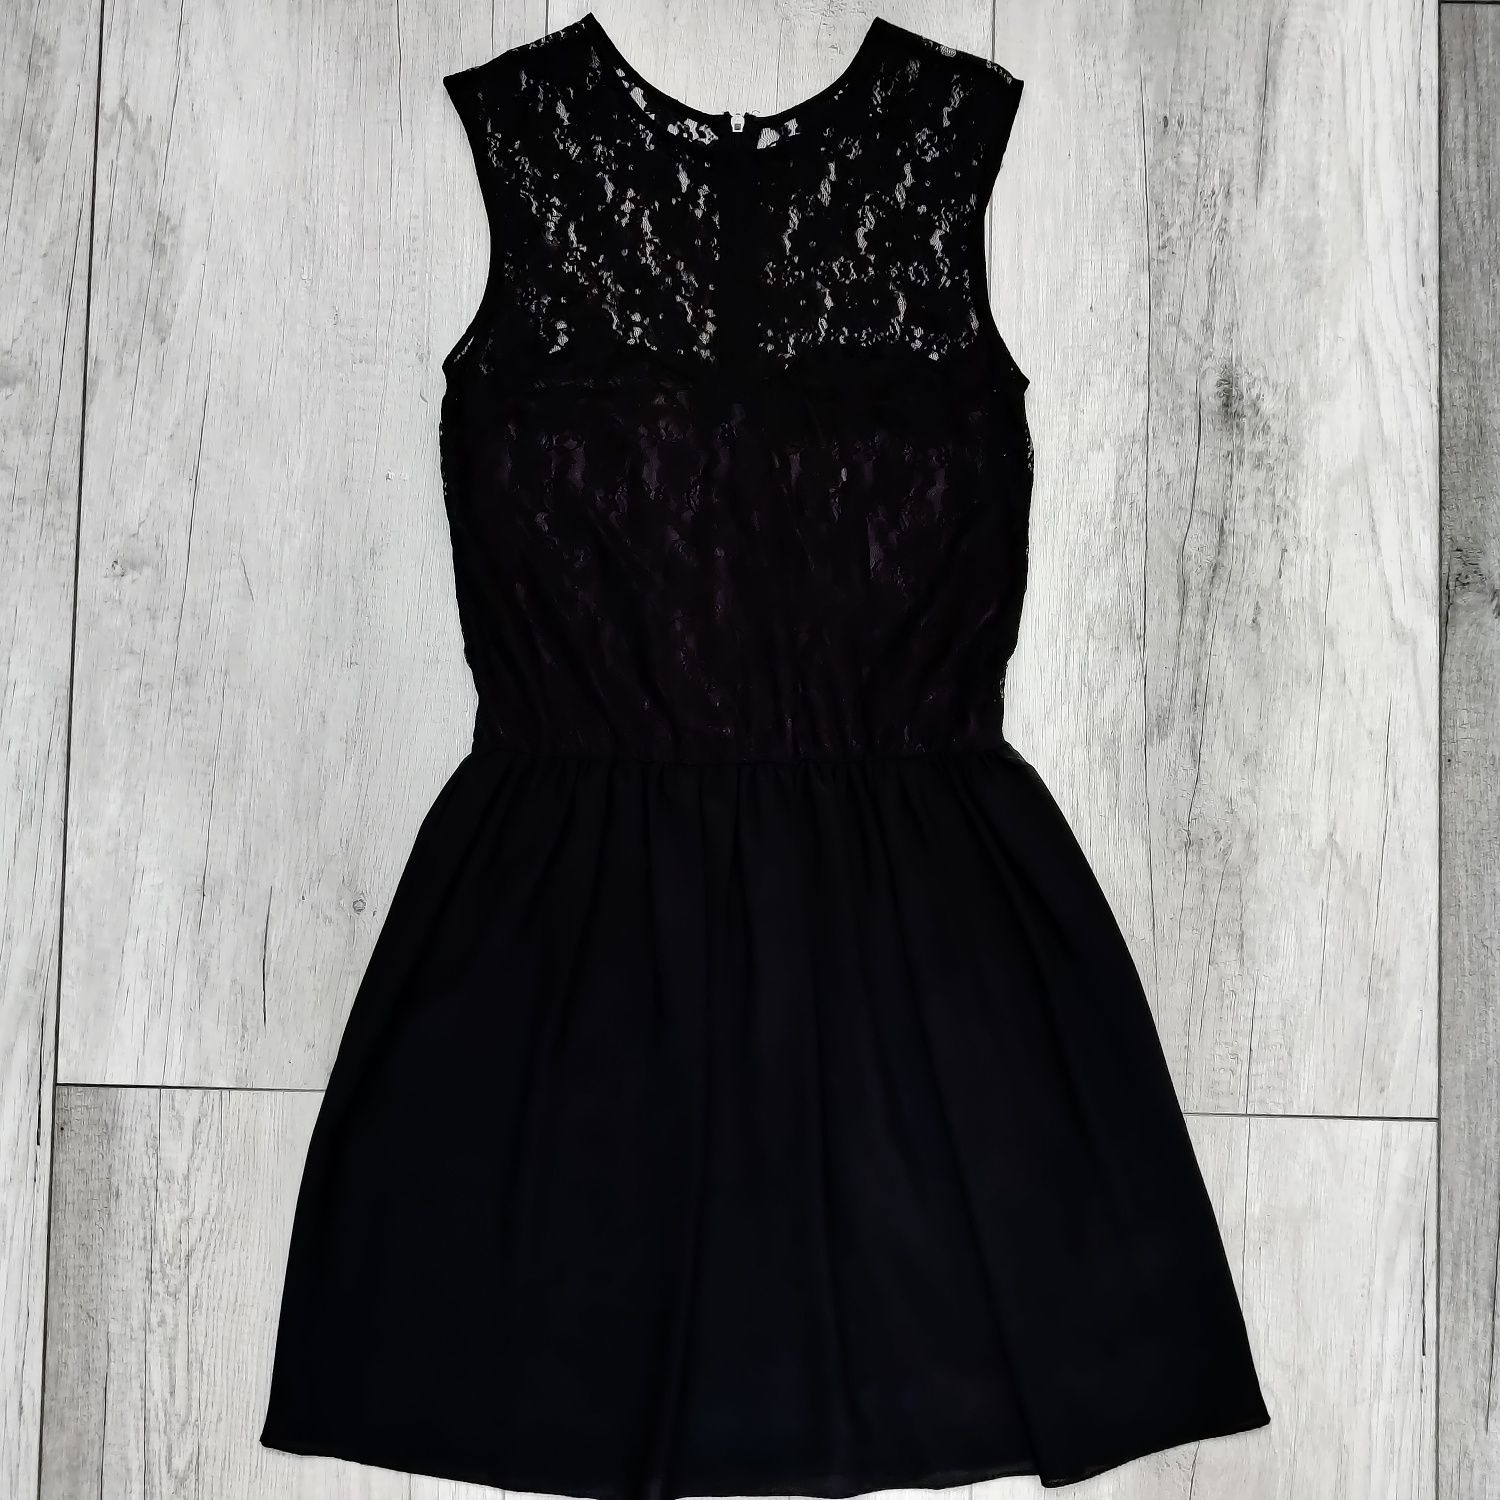 Czarna sukienka z koronki, ażurowa koktajlowa, mała czarna, S / 36